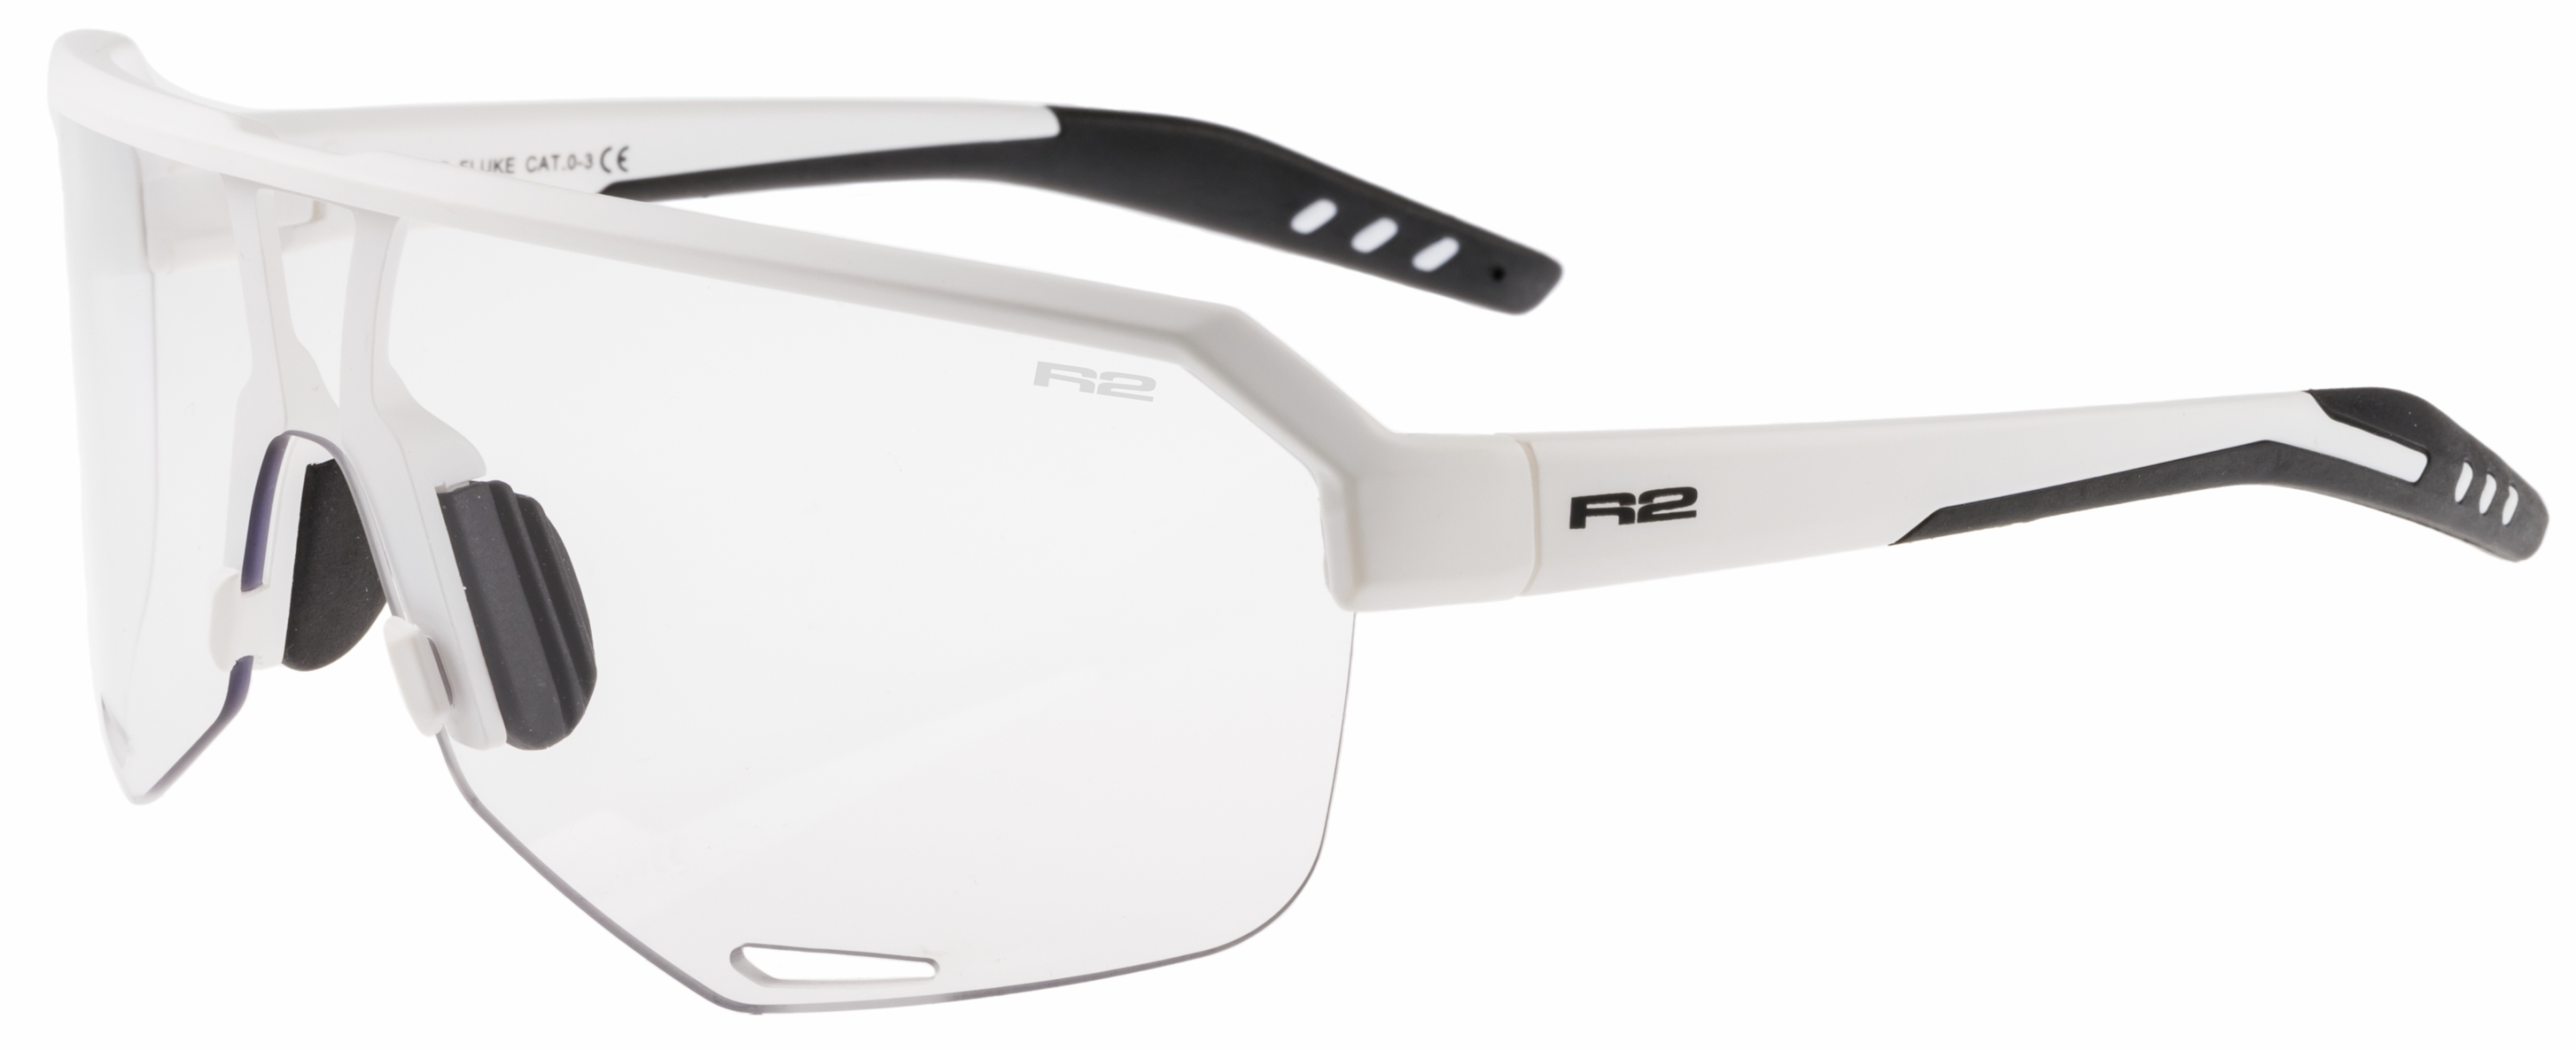 Fotochromatické sluneční brýle  R2 FLUKE AT100S - standard